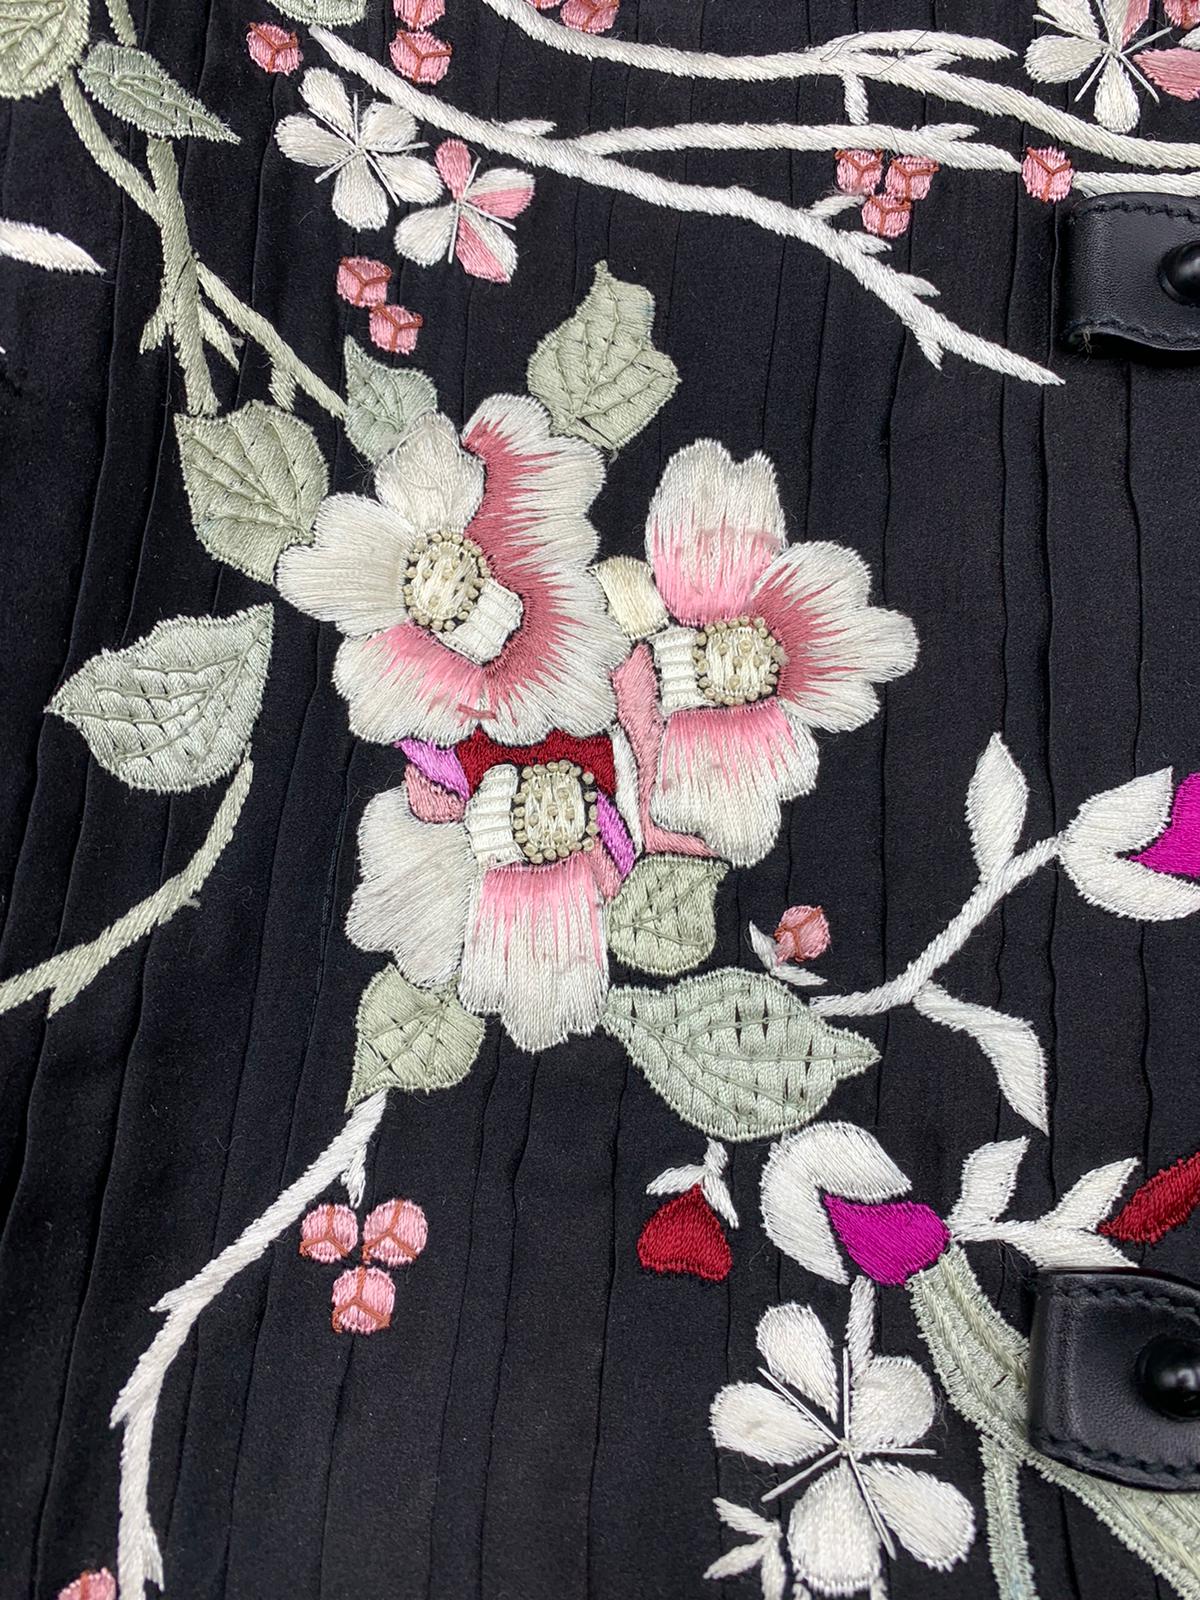 Tom Ford für Gucci Sehr Selten Schwarze Tasche mit japanischen Blumen